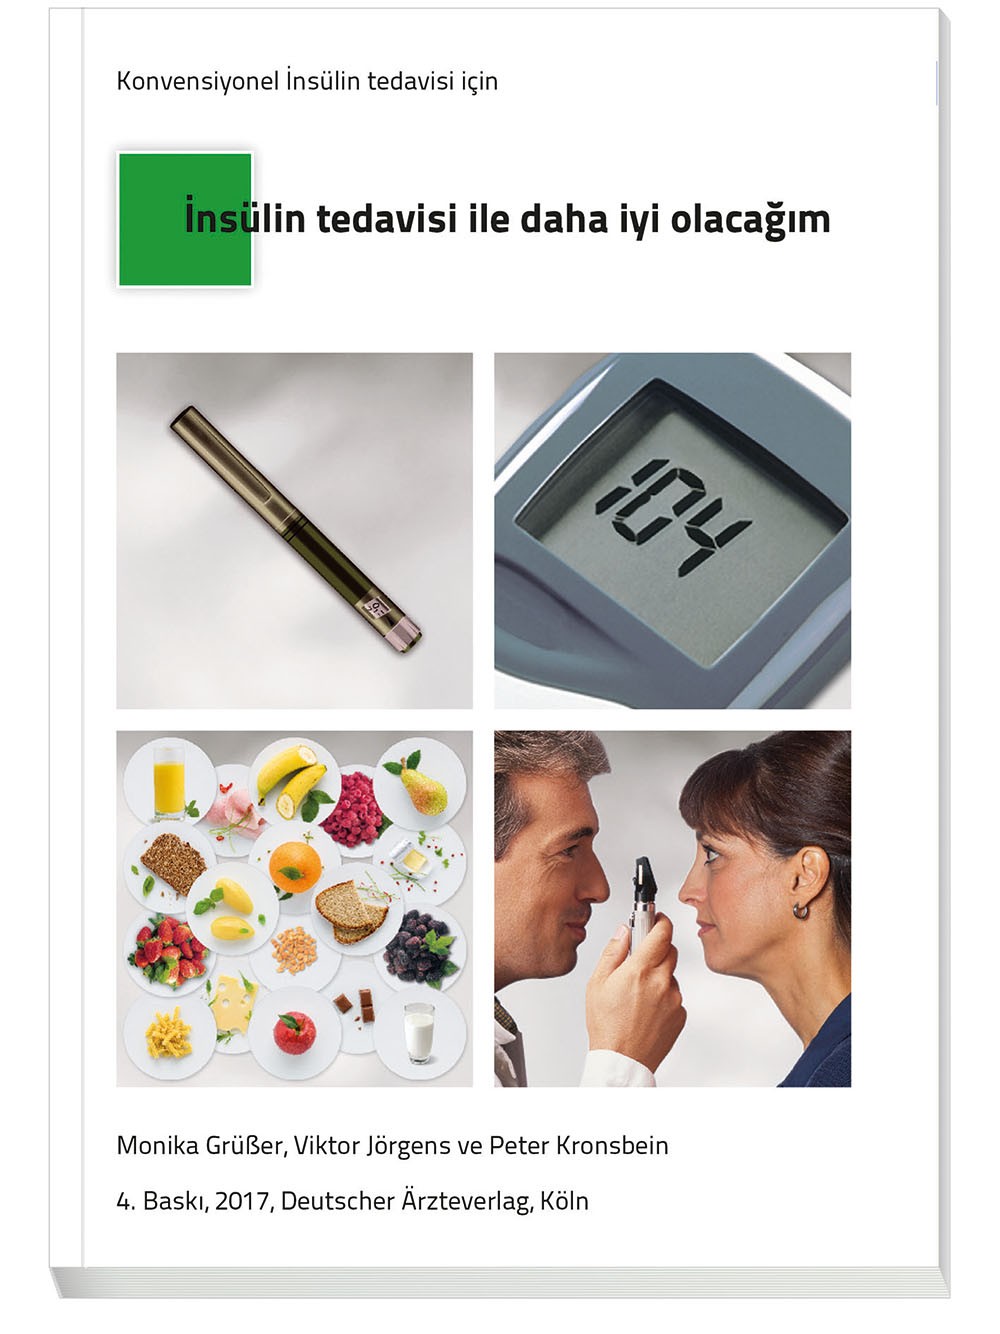 Türkisches Patientenbuch „Therapie mit Insulin"